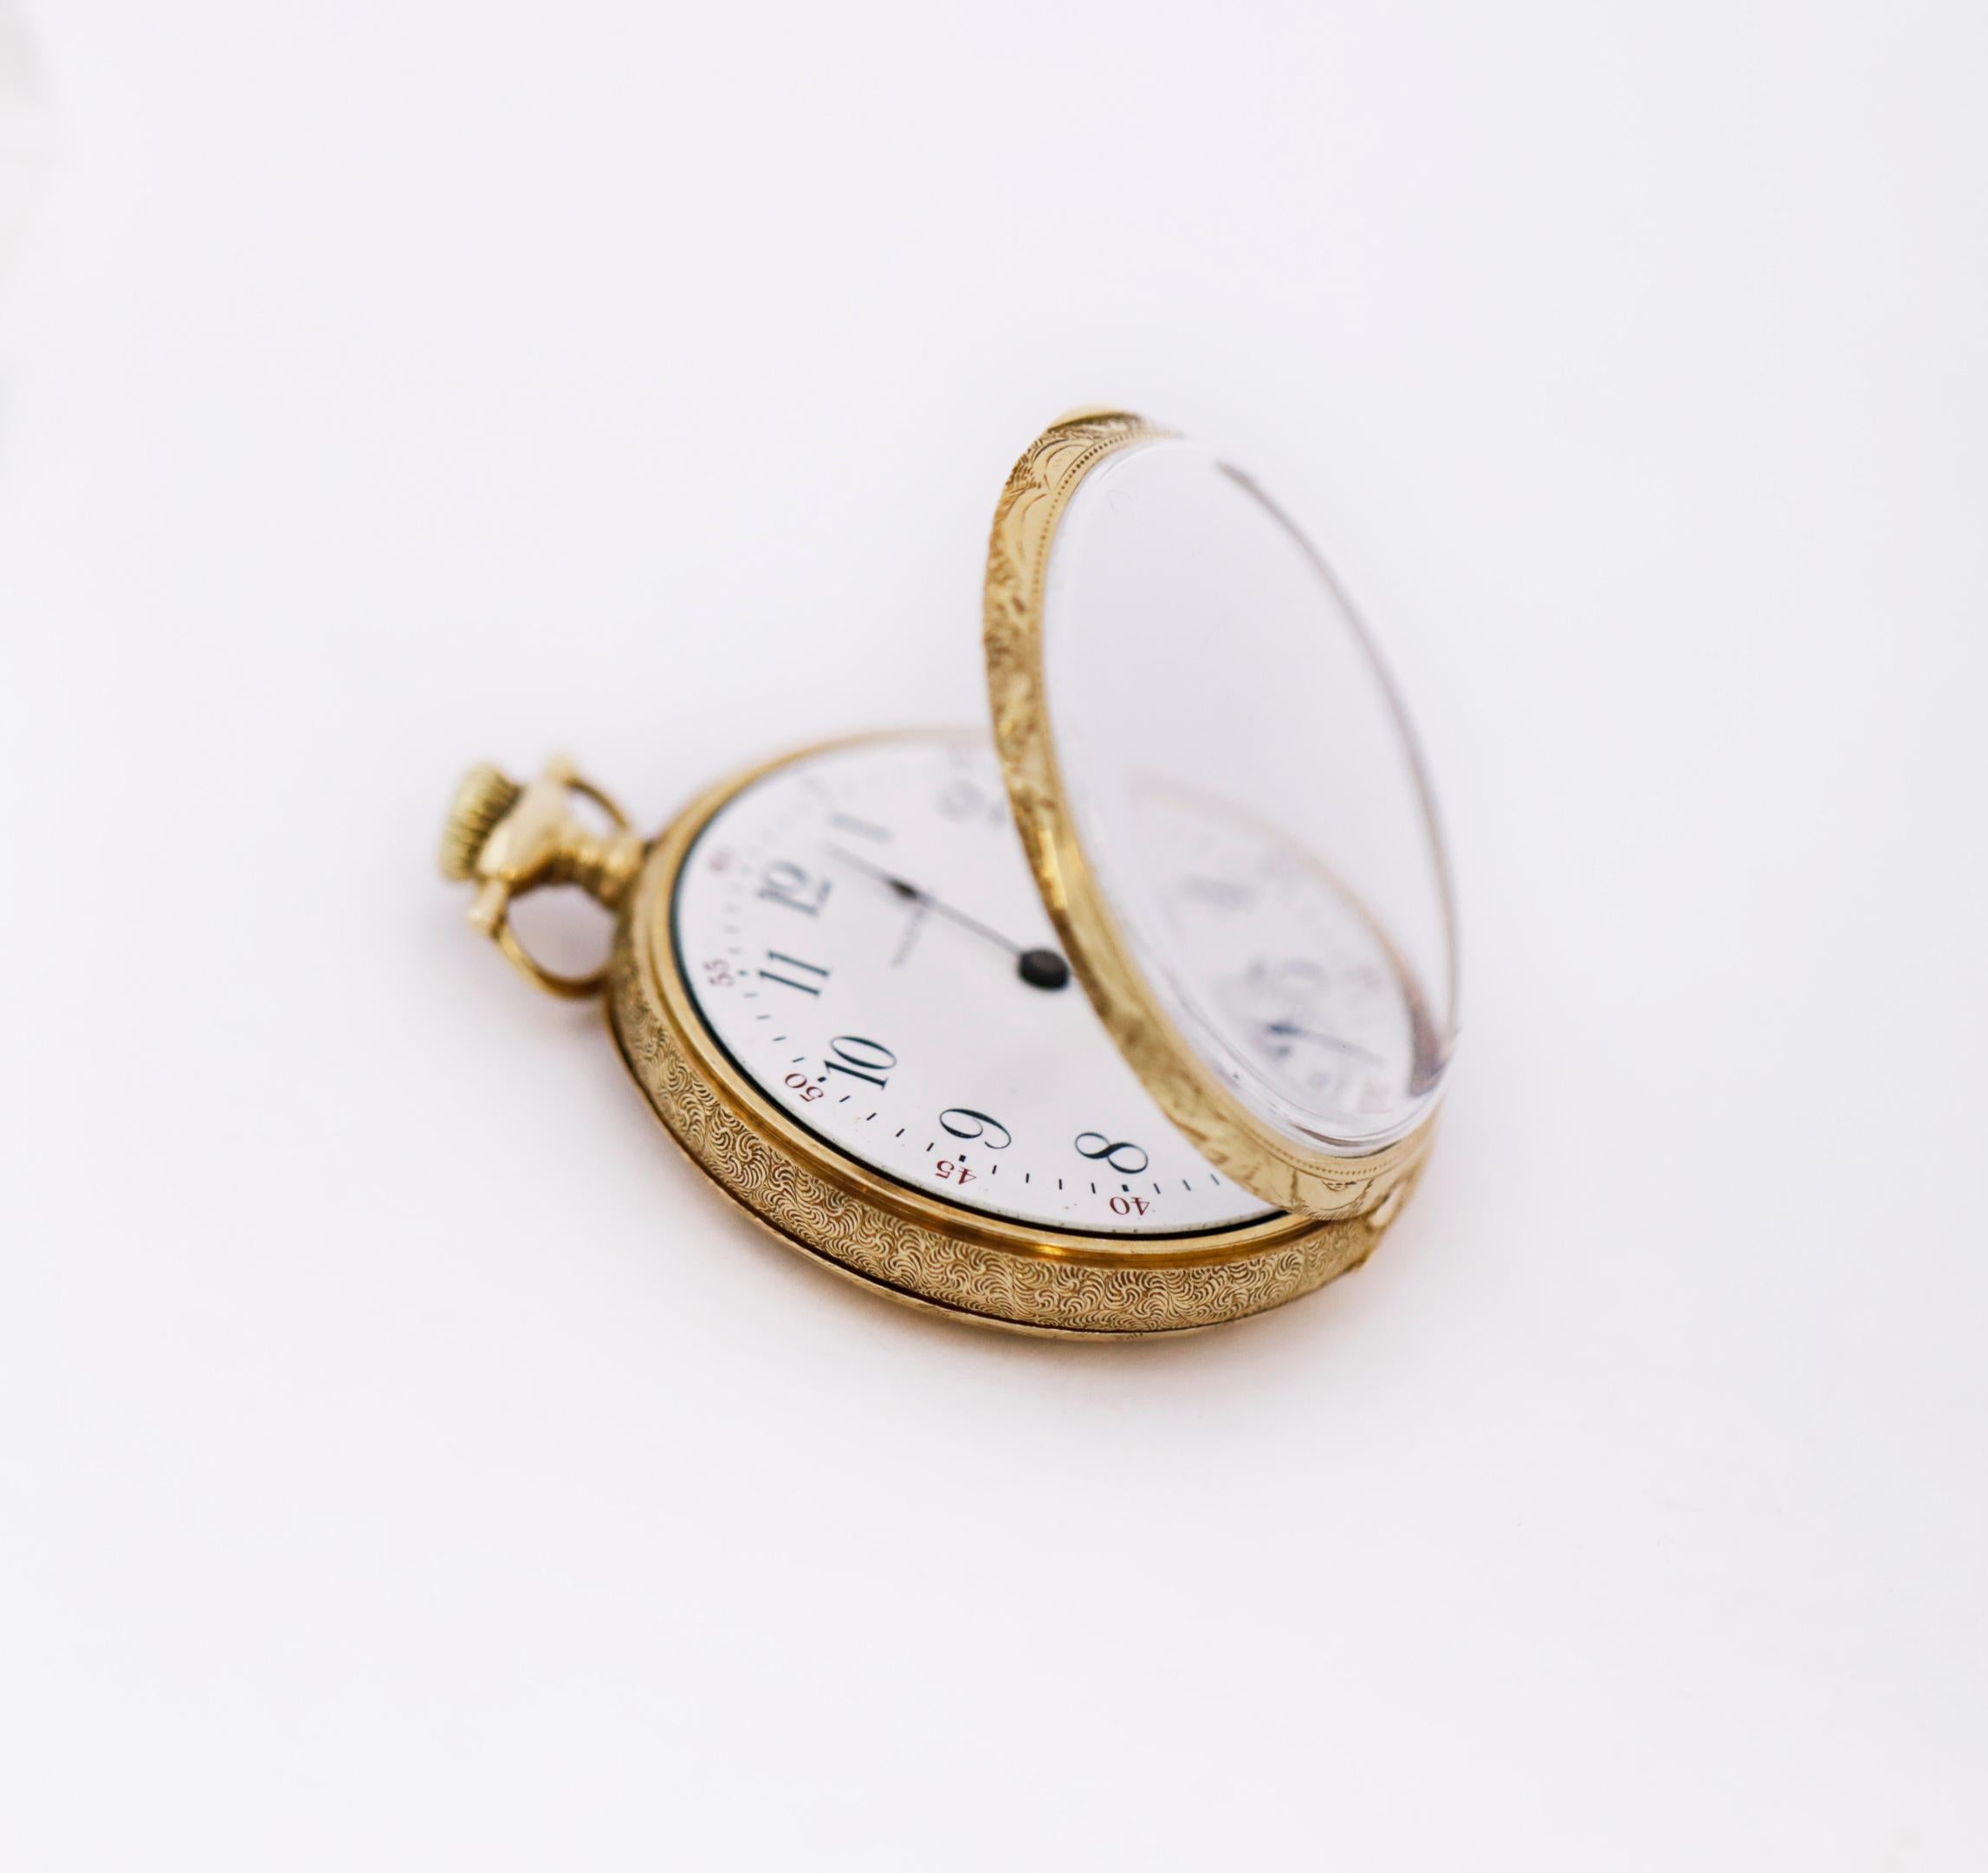 waltham 15 jewel pocket watch